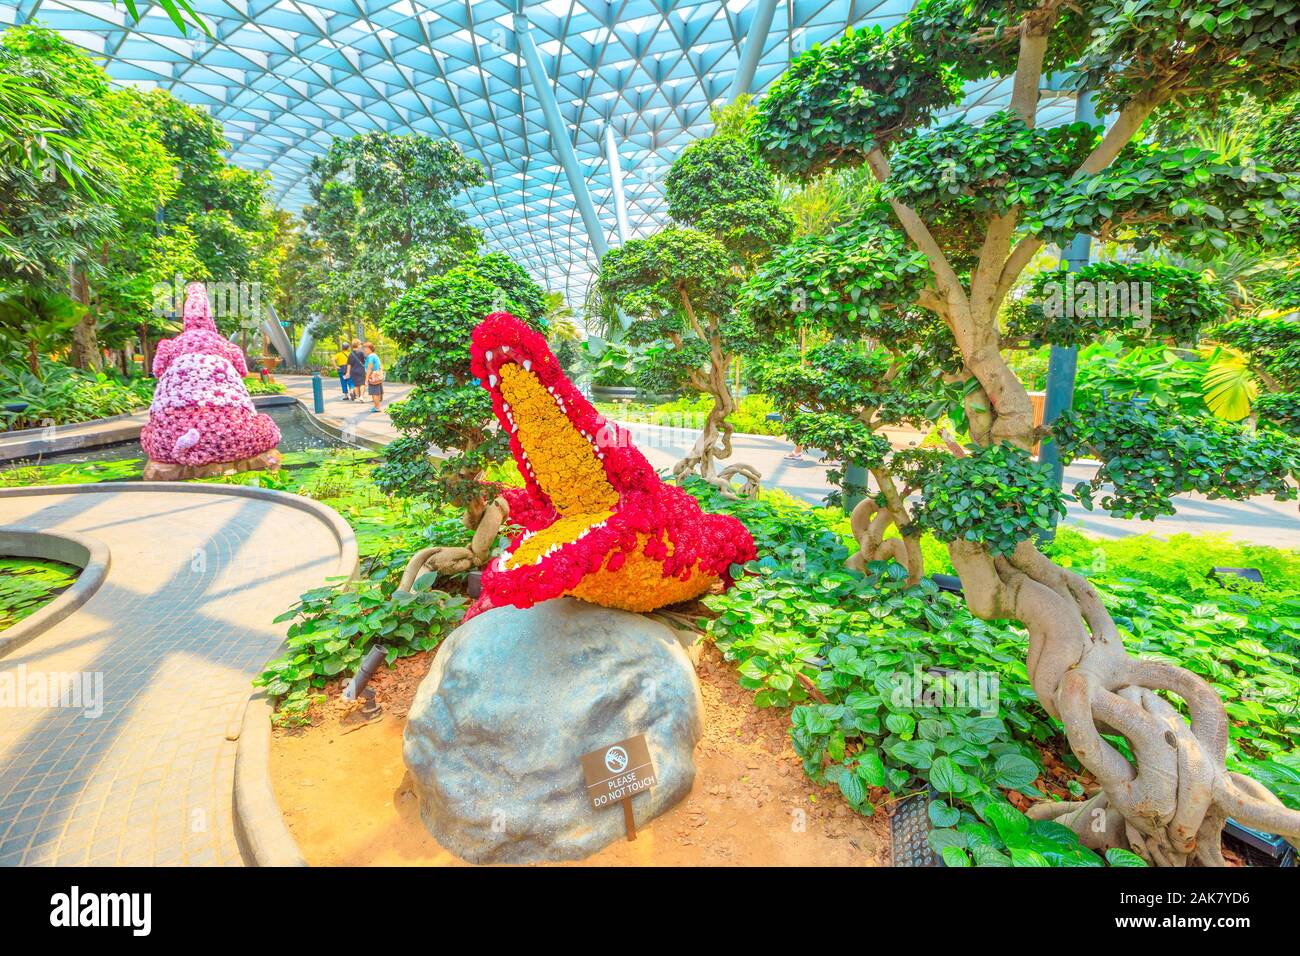 Singapur - el Aug 8, 2019: Flor de cocodrilo roja escultura Topiary, paseo en canopy Park. Joya Changi Airport es un parque temático con jardines Foto de stock